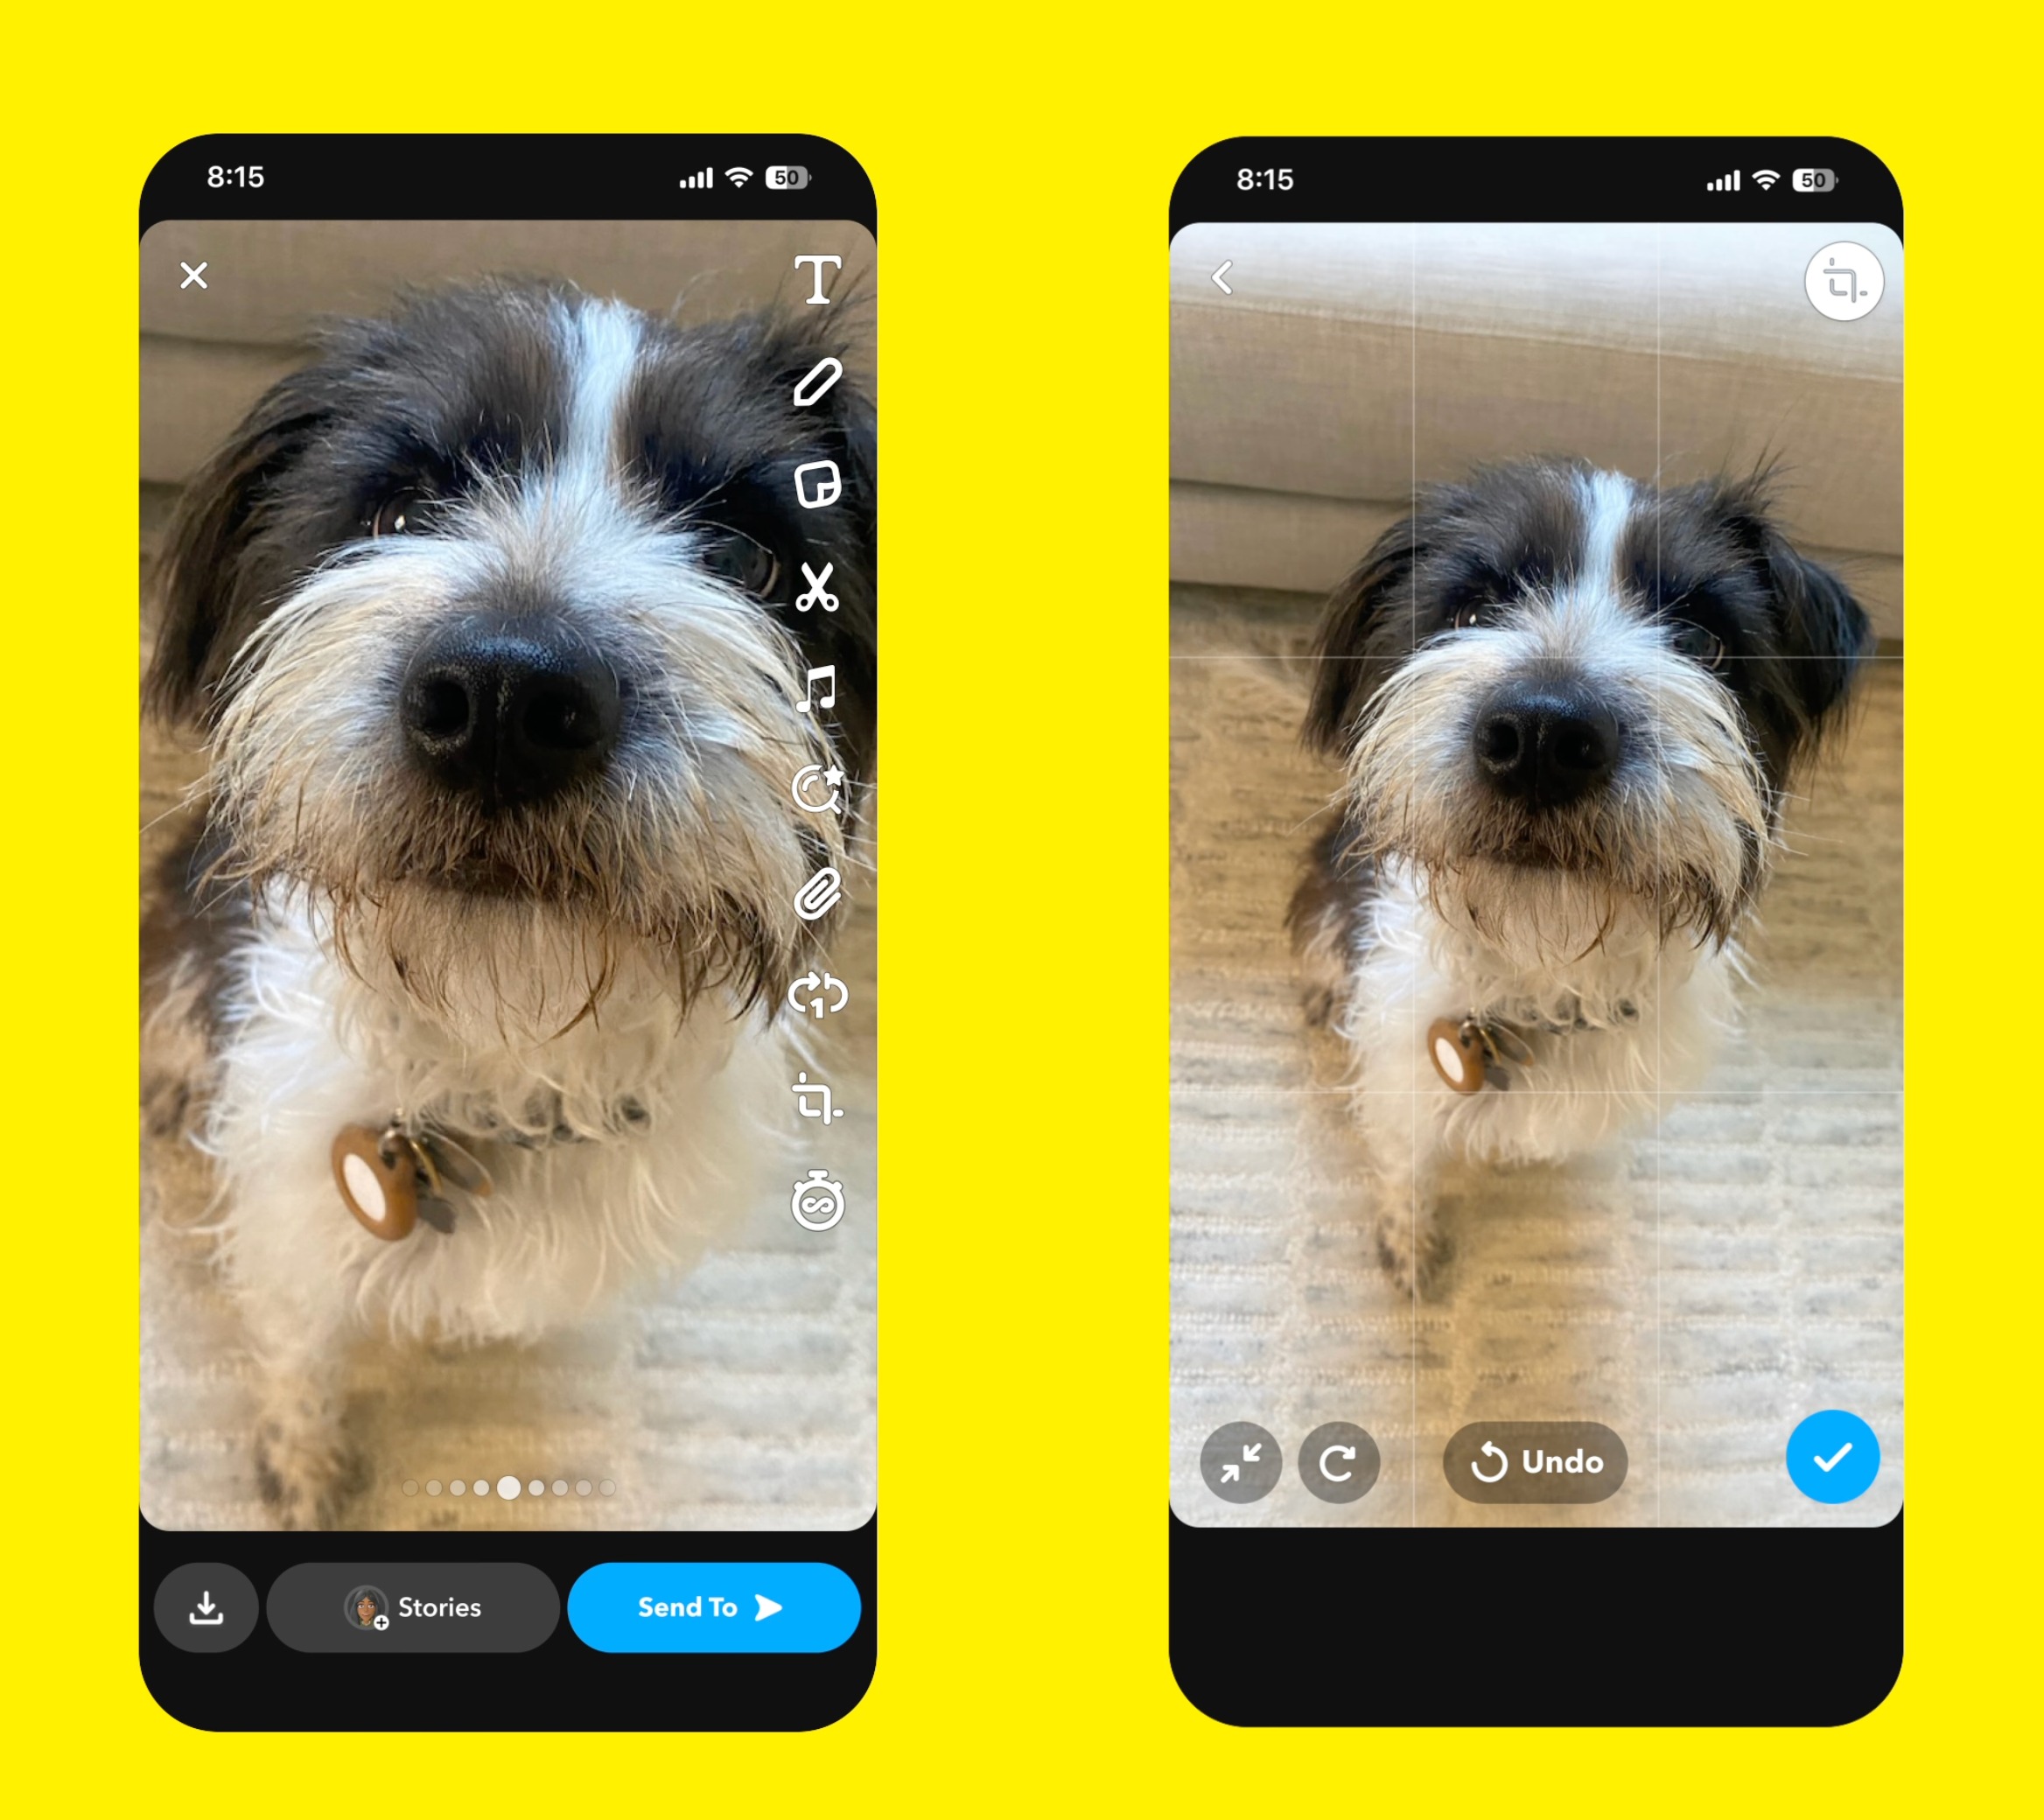 1702441565 659 Abonnenten von Snapchat koennen jetzt KI generierte Bilder erstellen und versenden